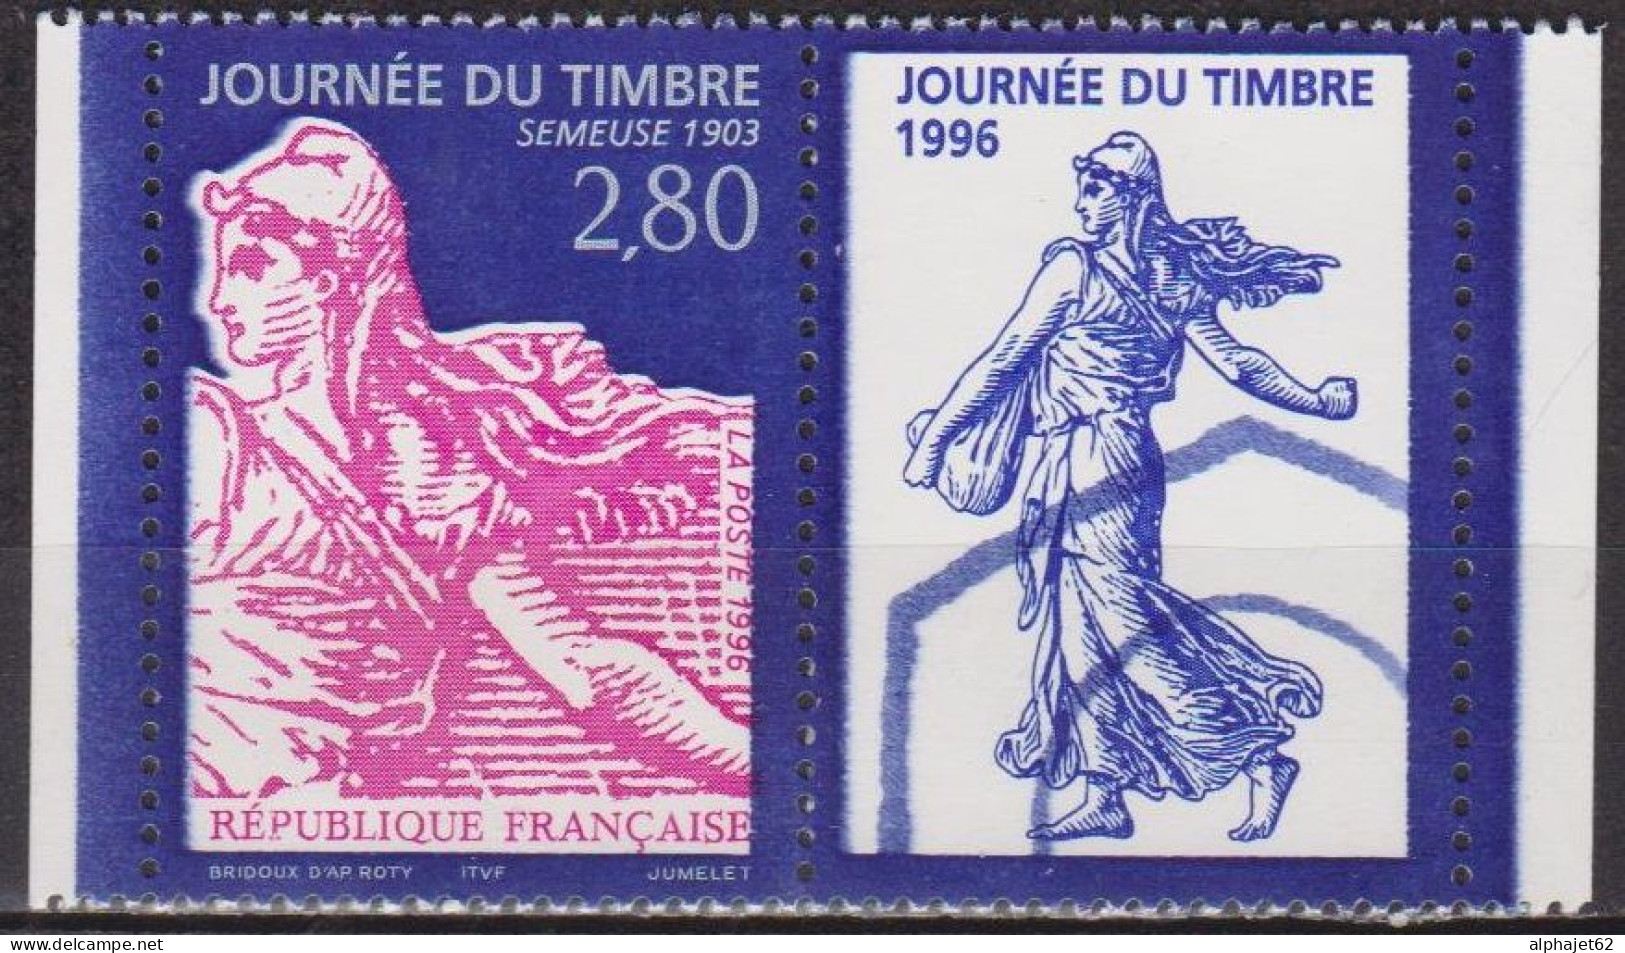 Journée Du Timbre, Type Semeuse 1903 - FRANCE - N° 2991 A ** - 1996 - Neufs